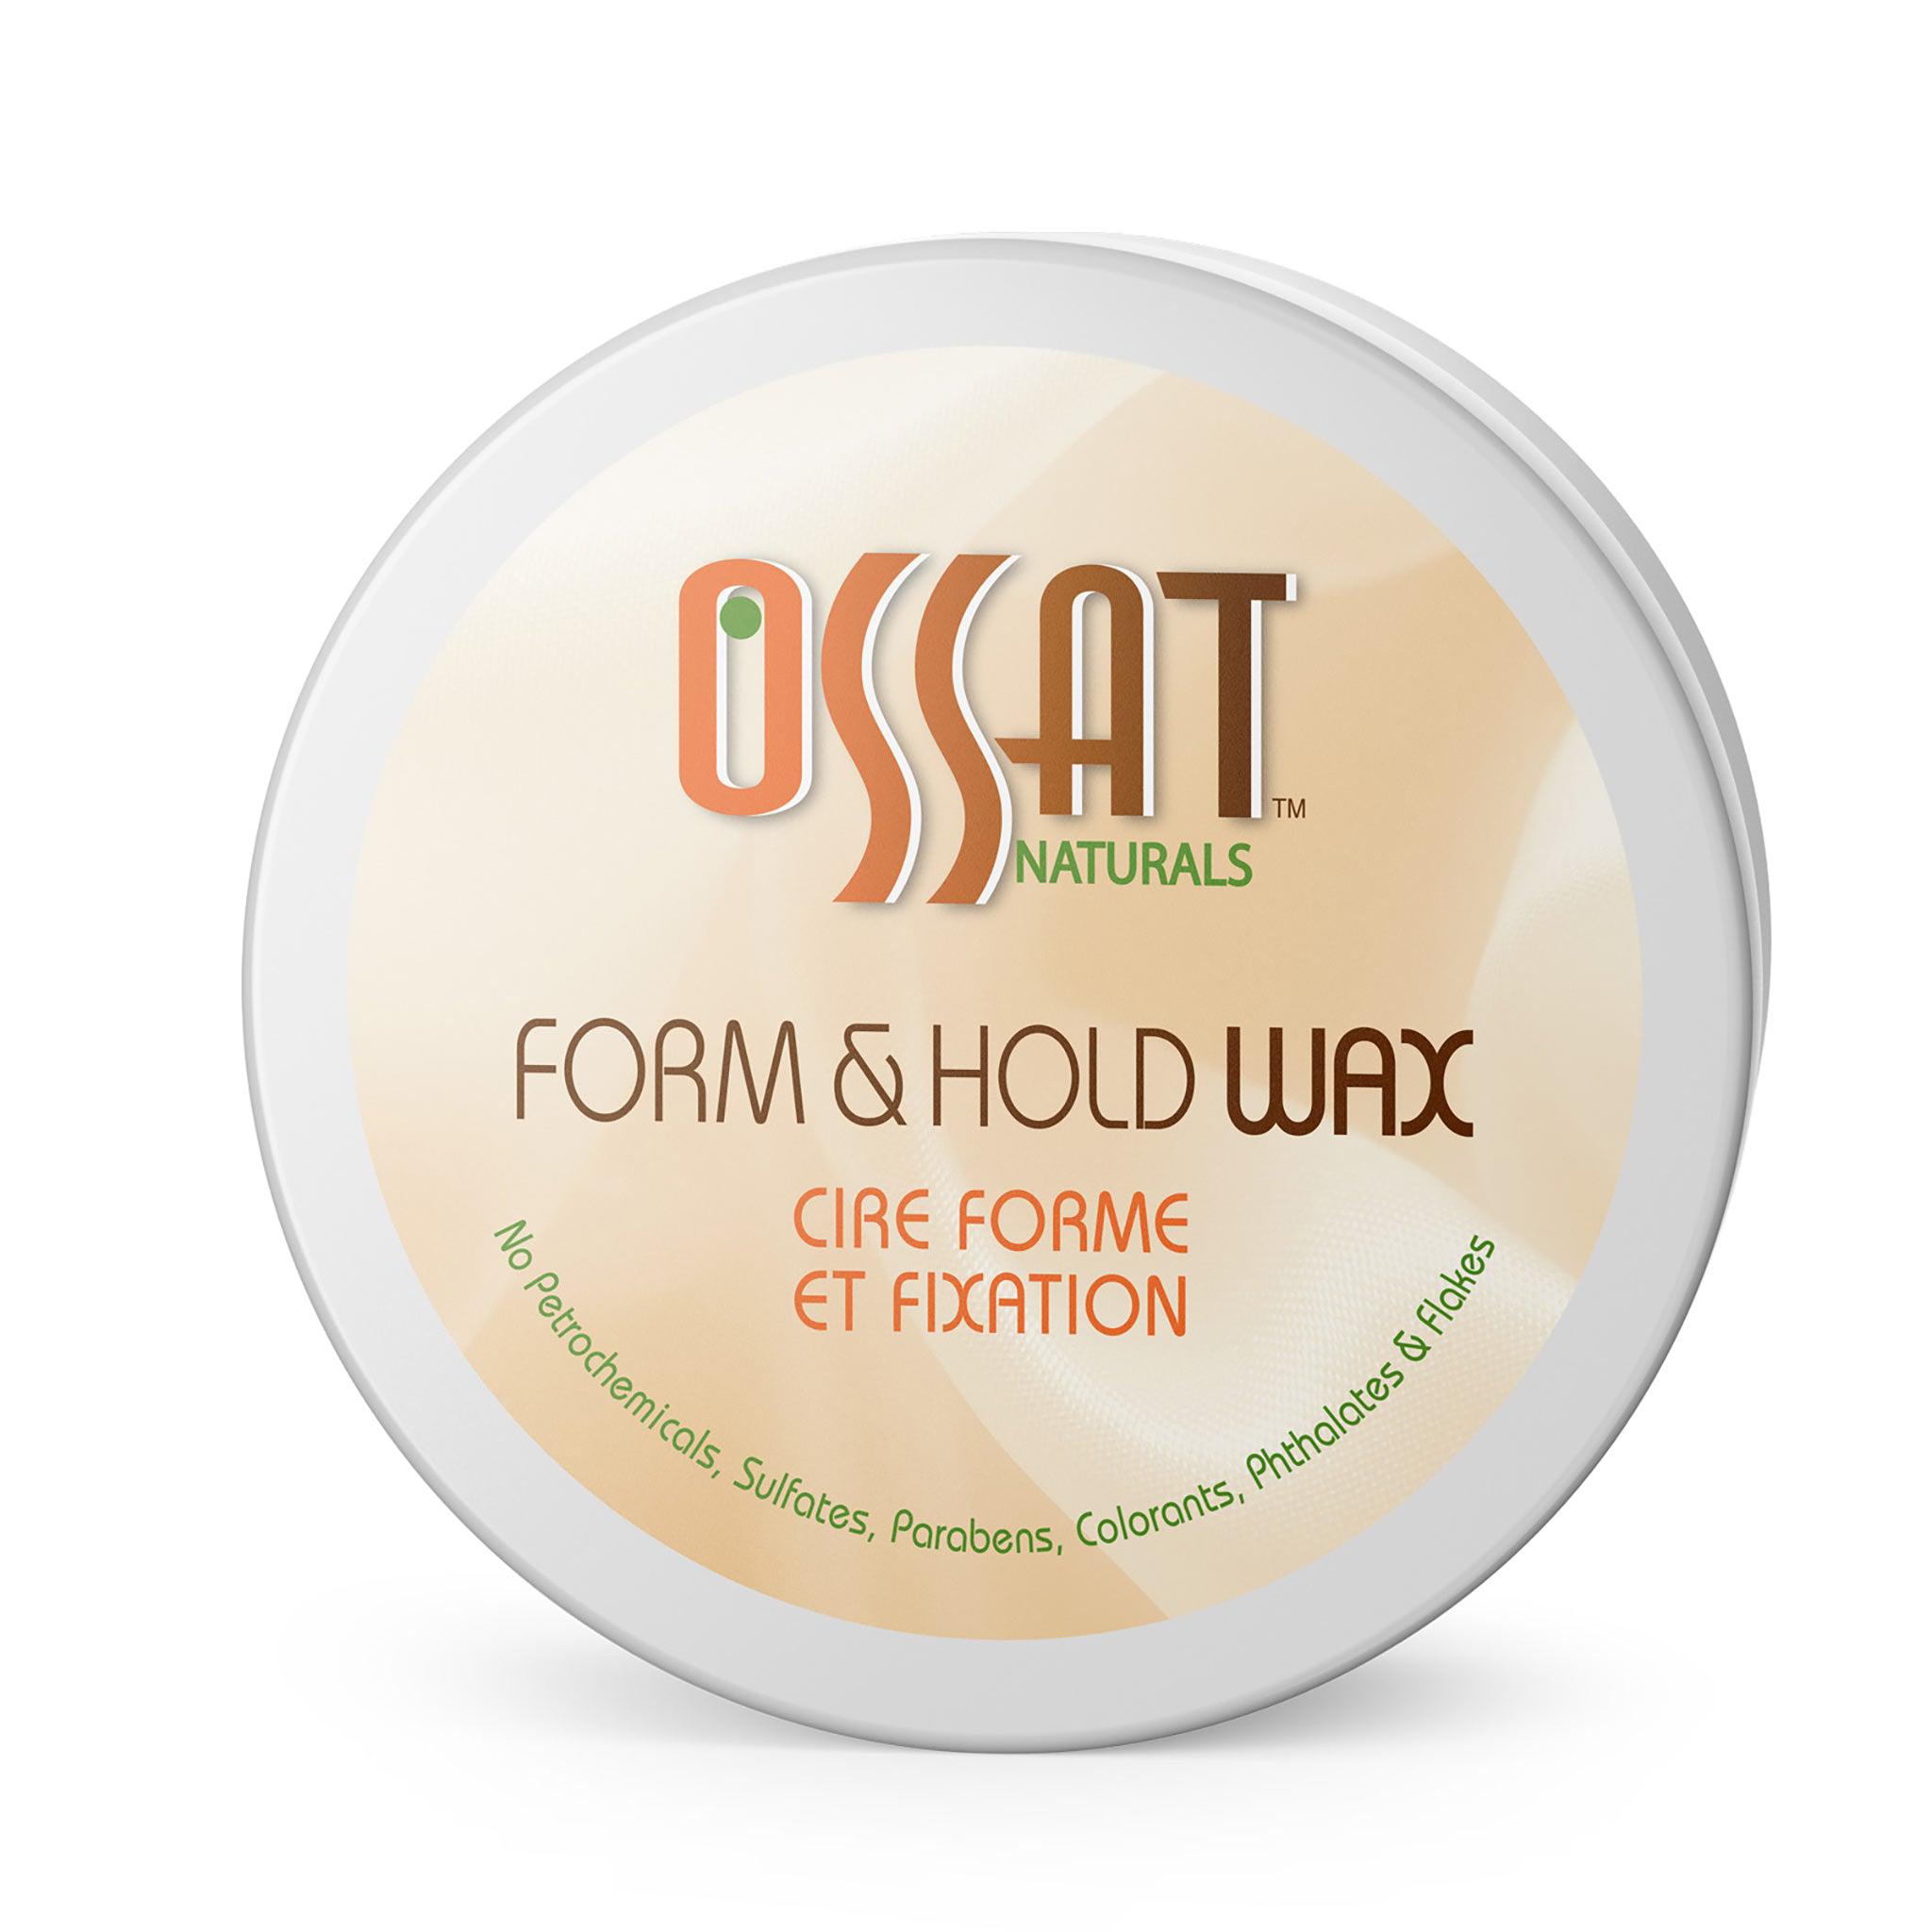 OSSAT Naturals Form & Hold Wax